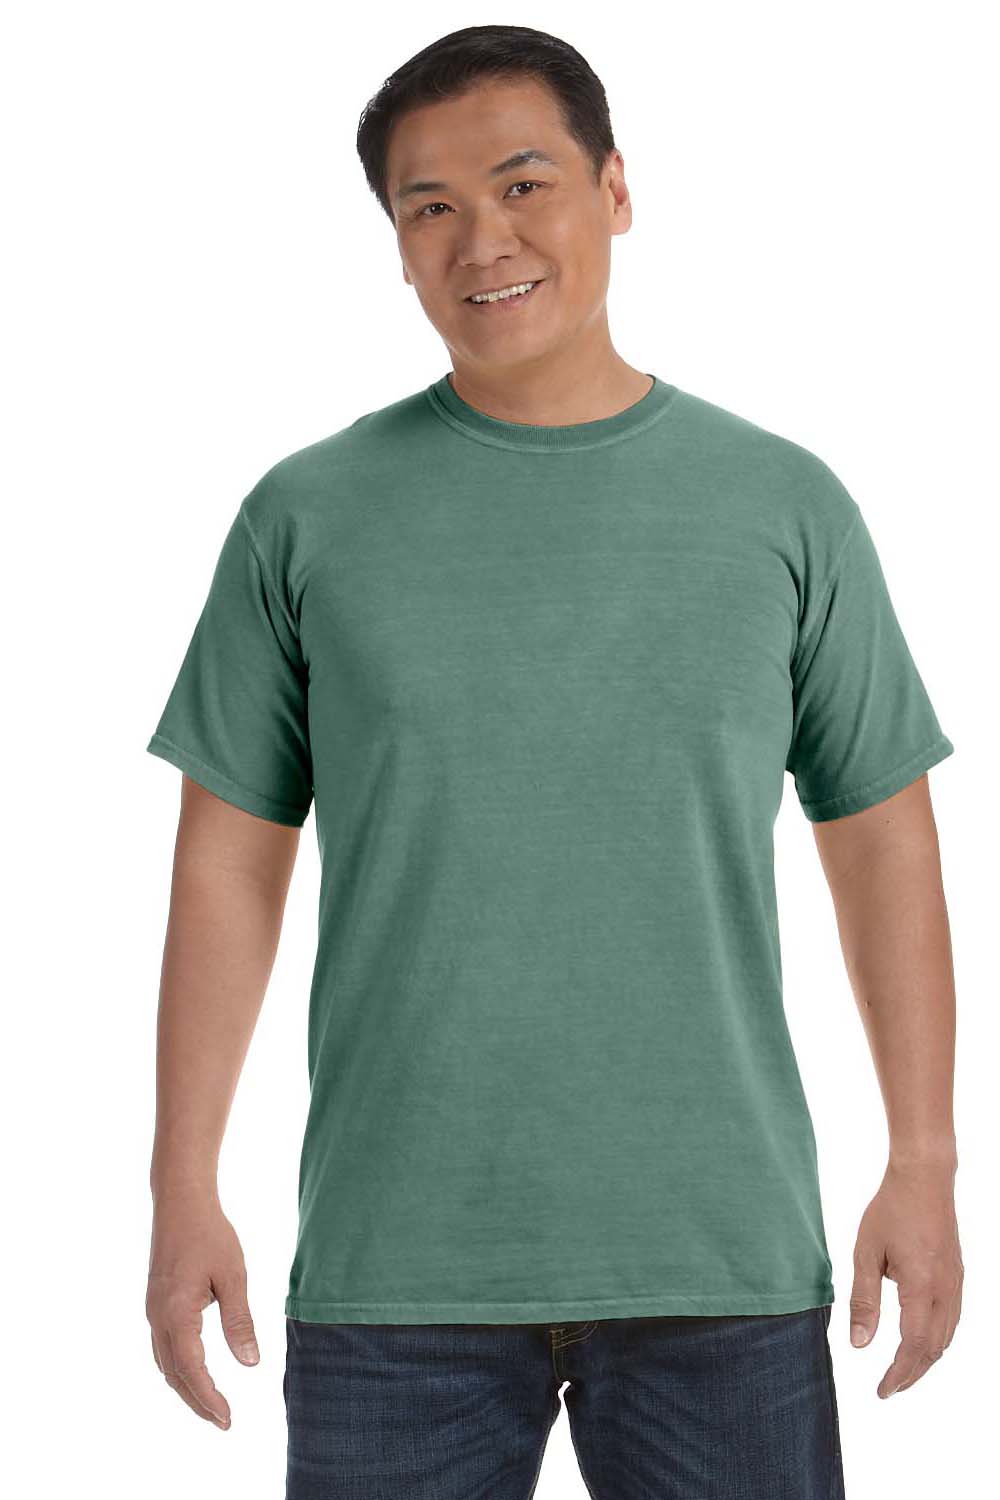 Comfort Colors C1717 Mens Short Sleeve Crewneck T-Shirt Light Green Front